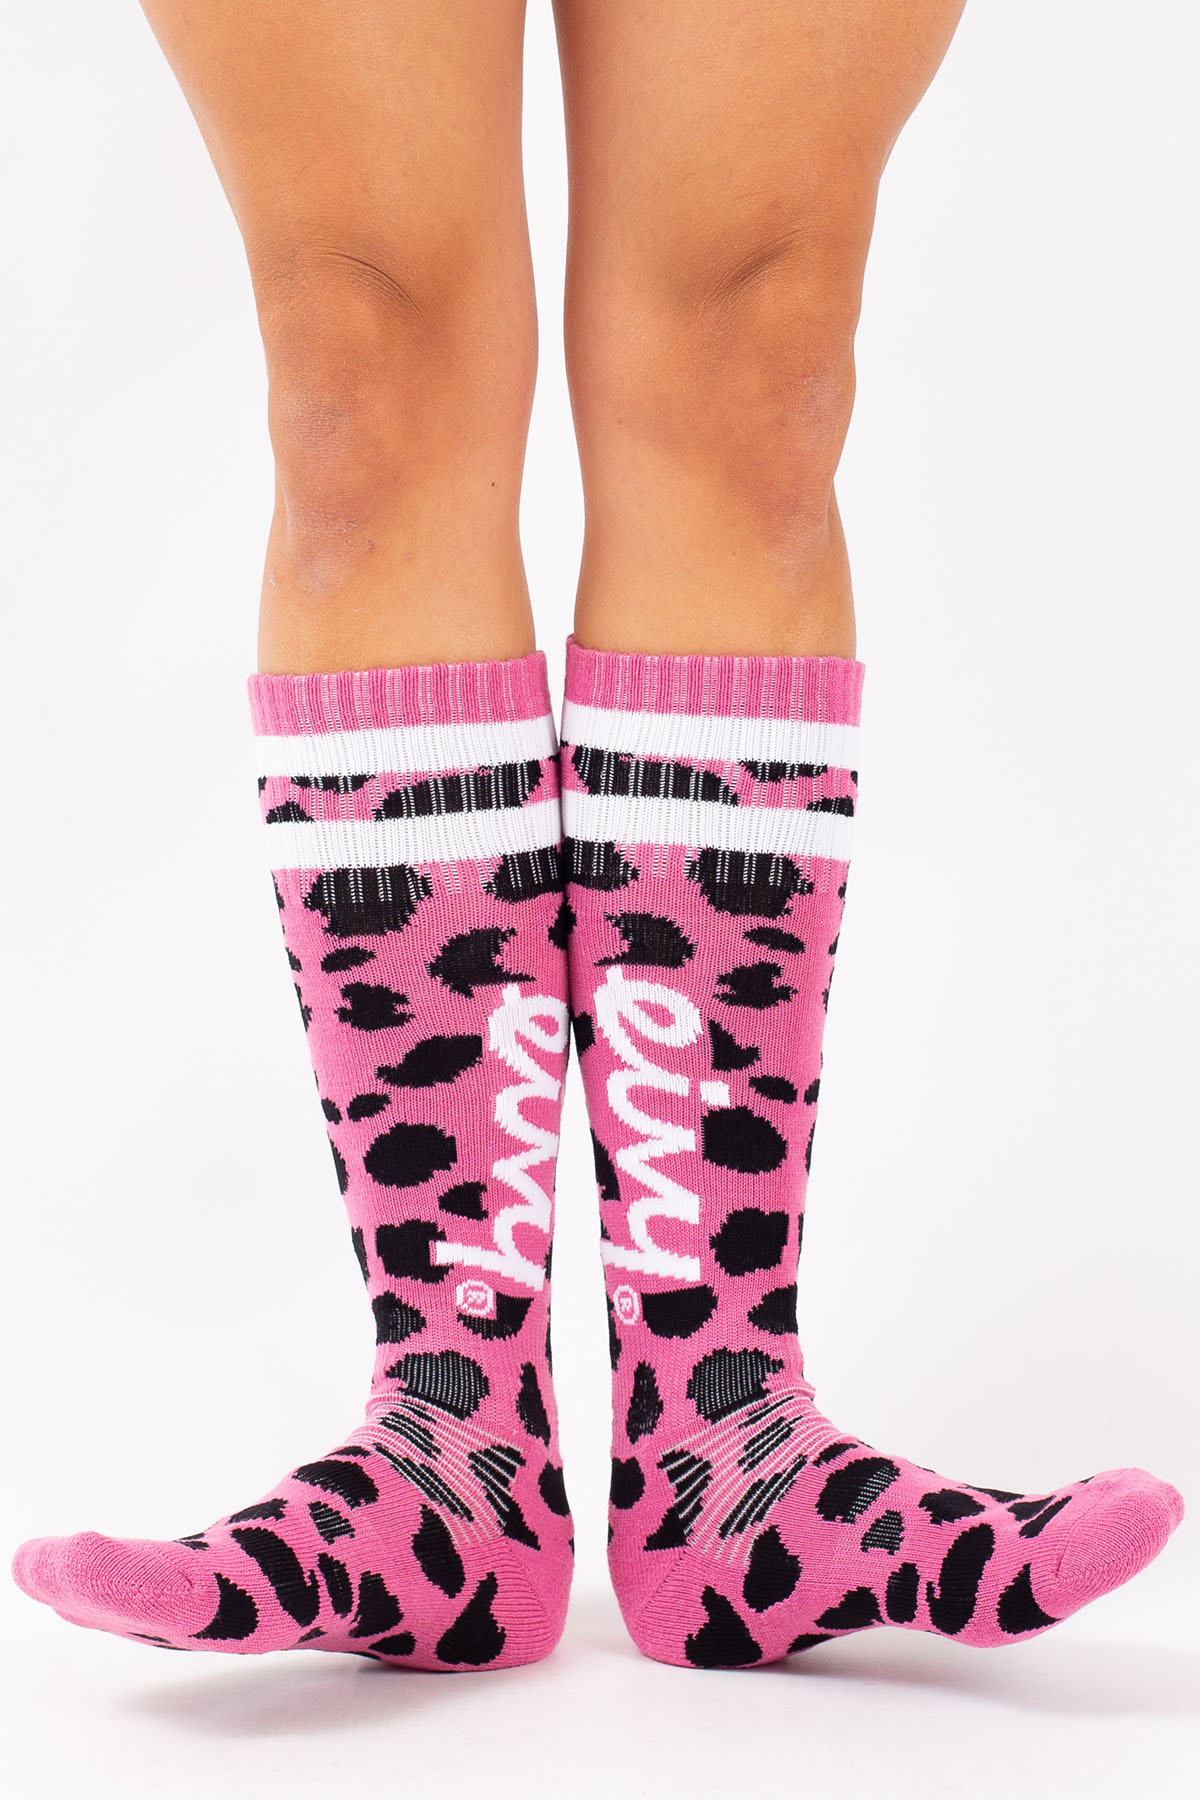 Cheerleader Wool Socks - Pink Cheetah